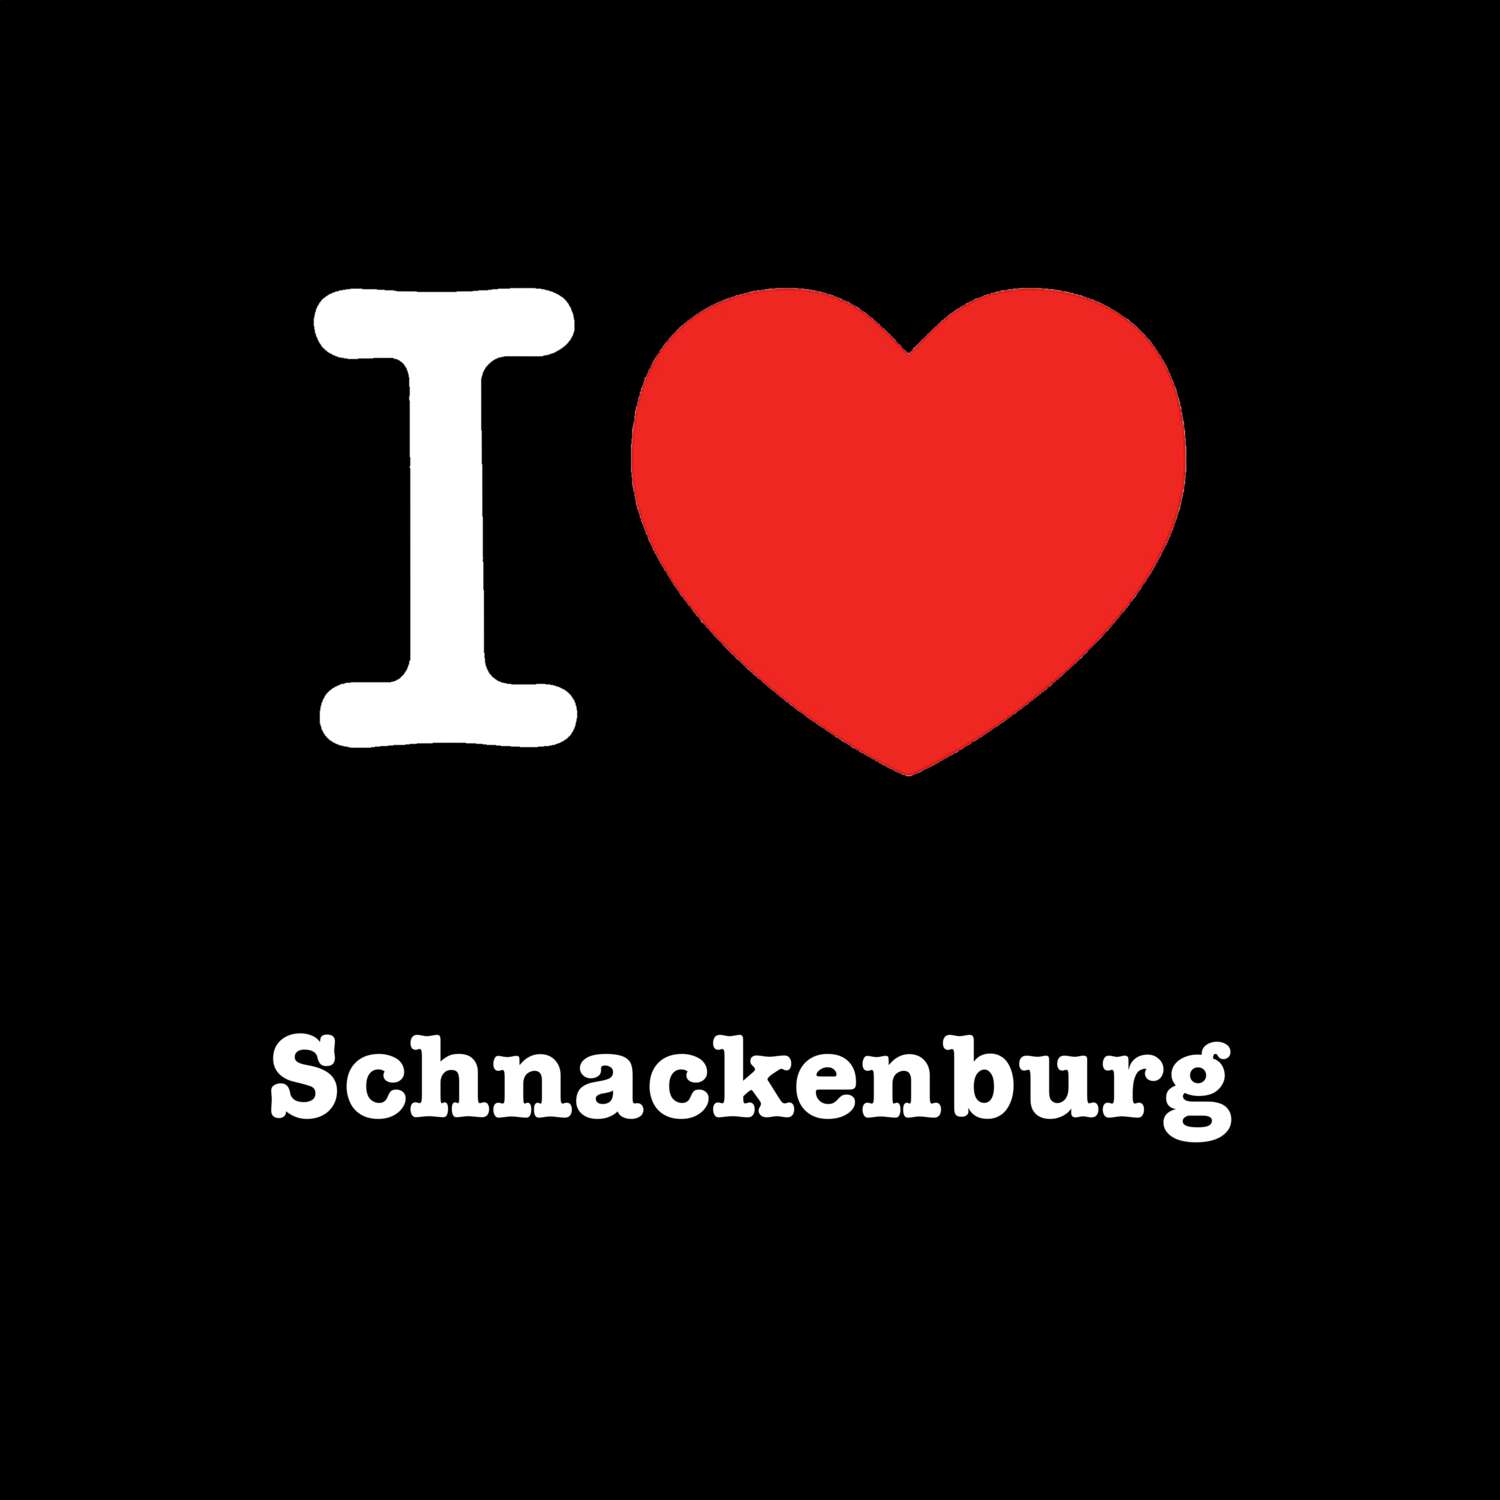 Schnackenburg T-Shirt »I love«